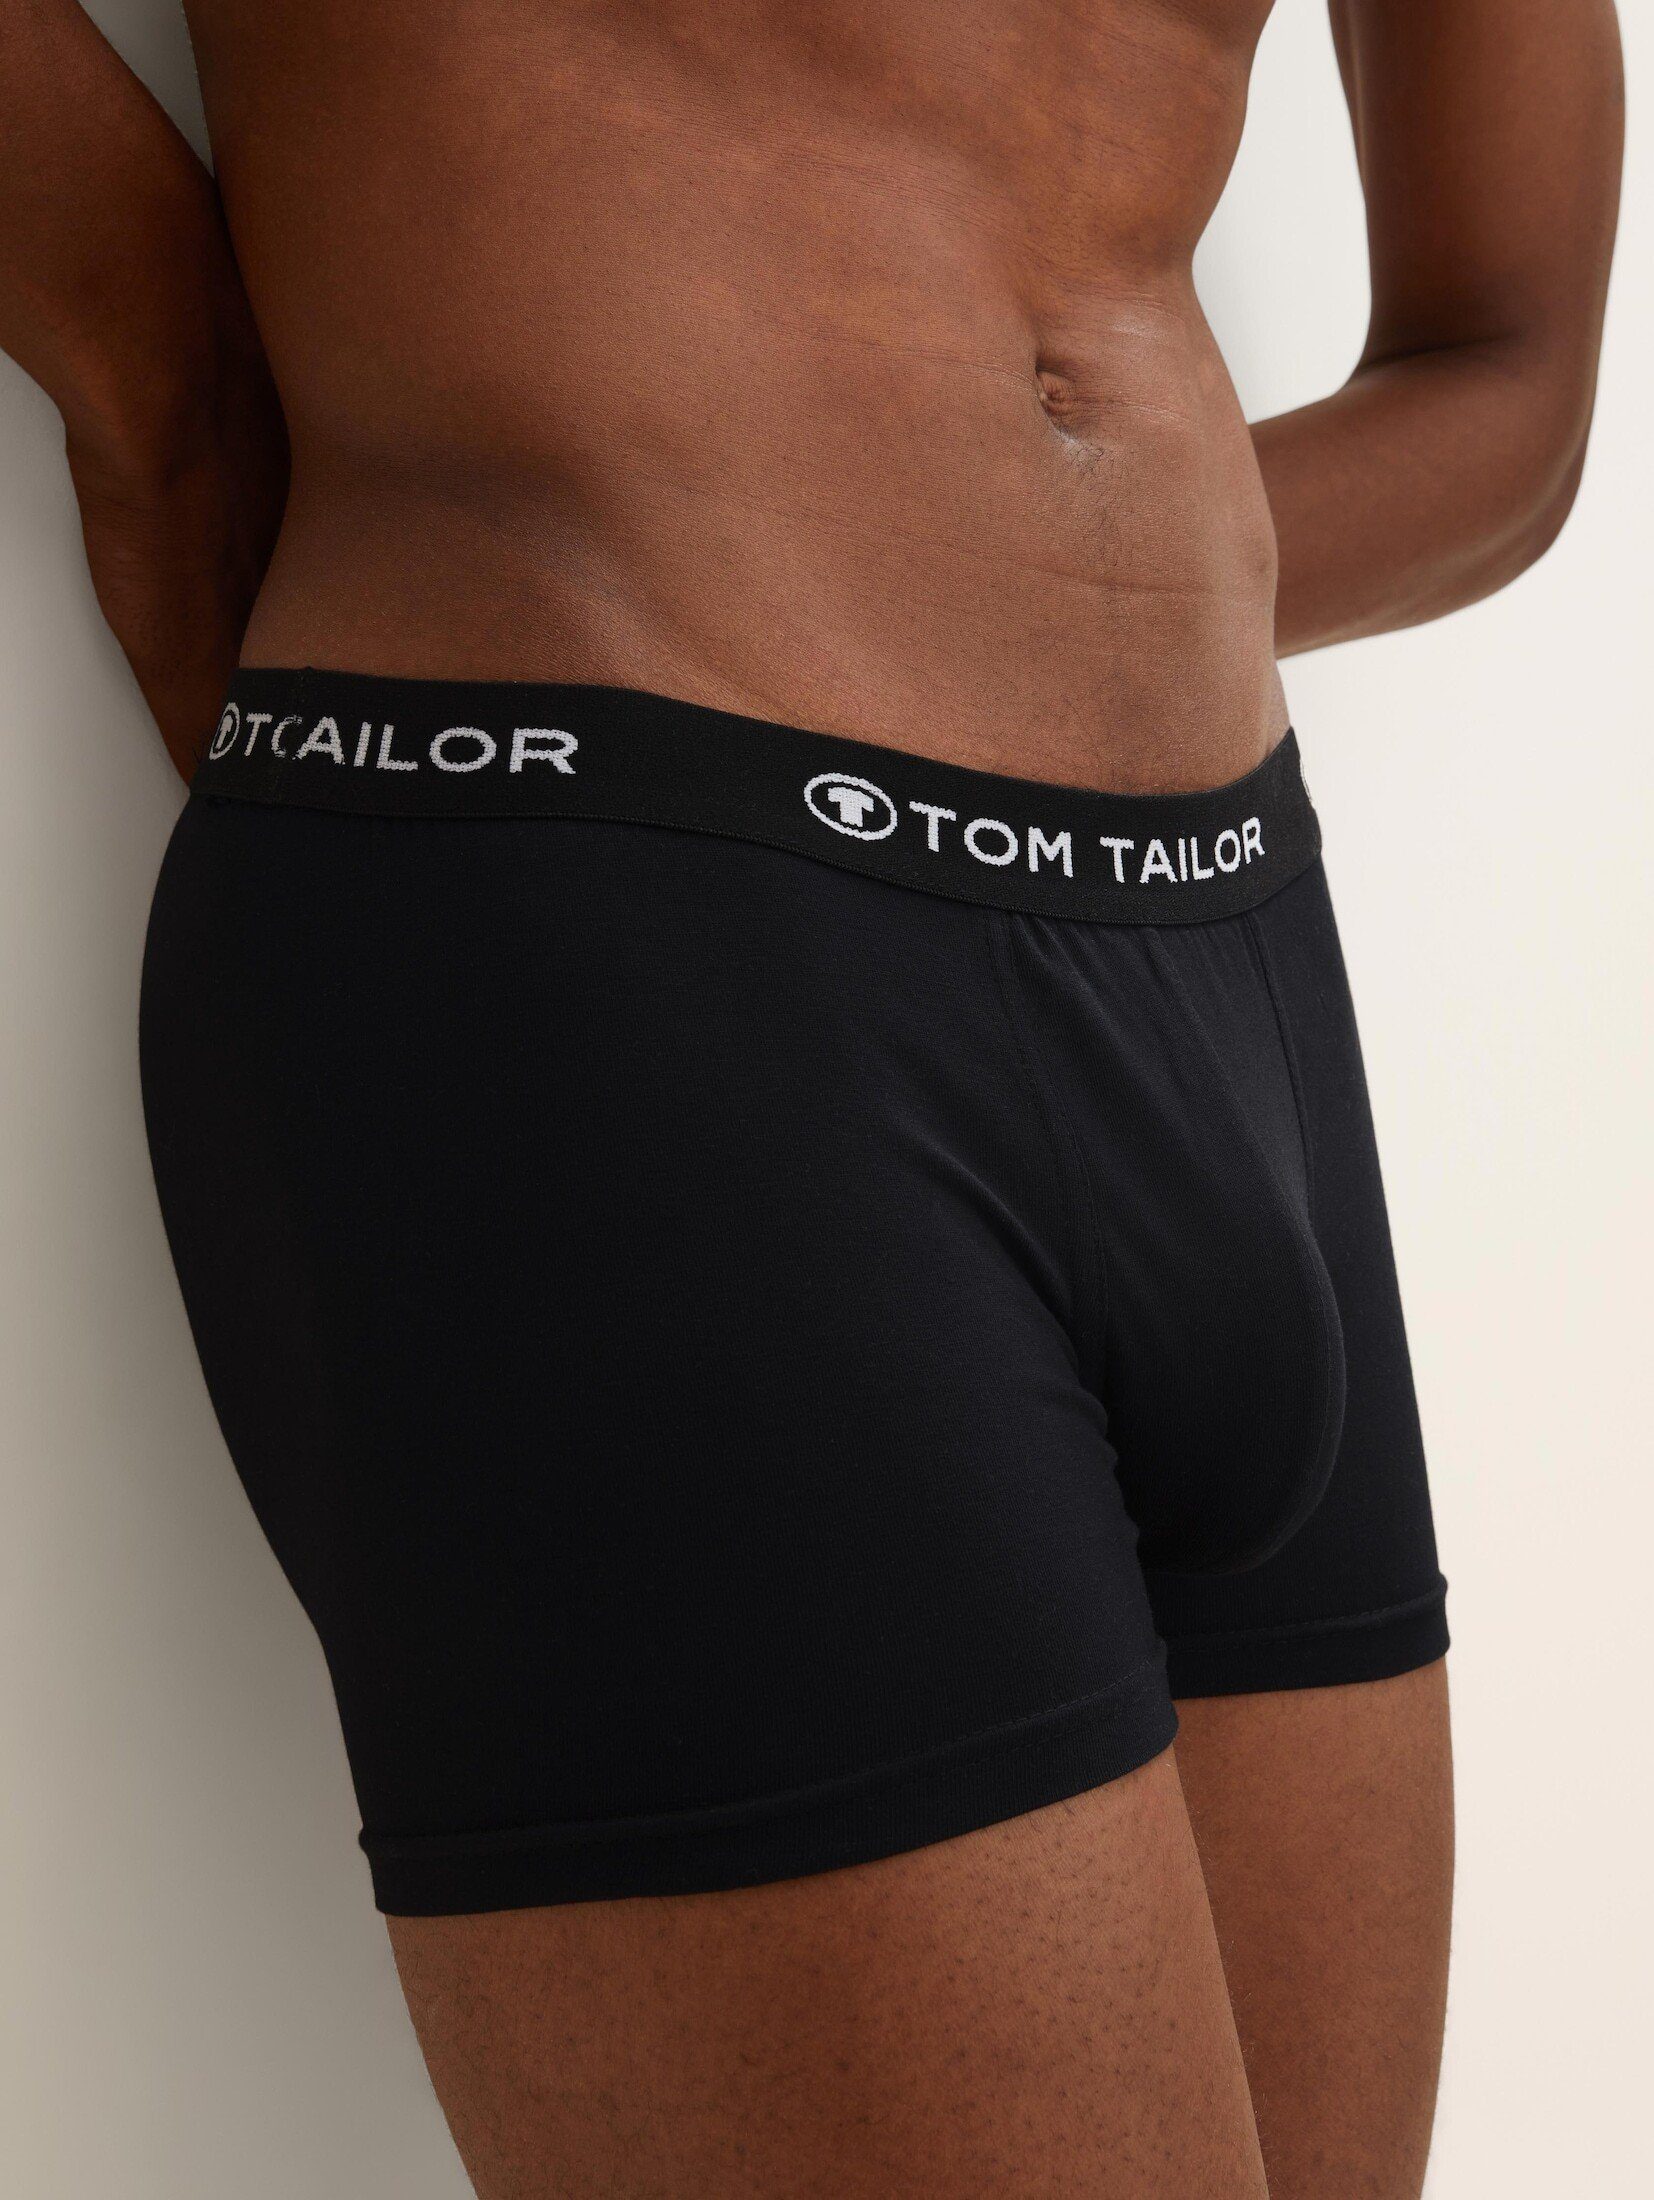 TOM TAILOR black-black-black Hip-Pants im Dreierpack Boxershorts (im Dreierpack)